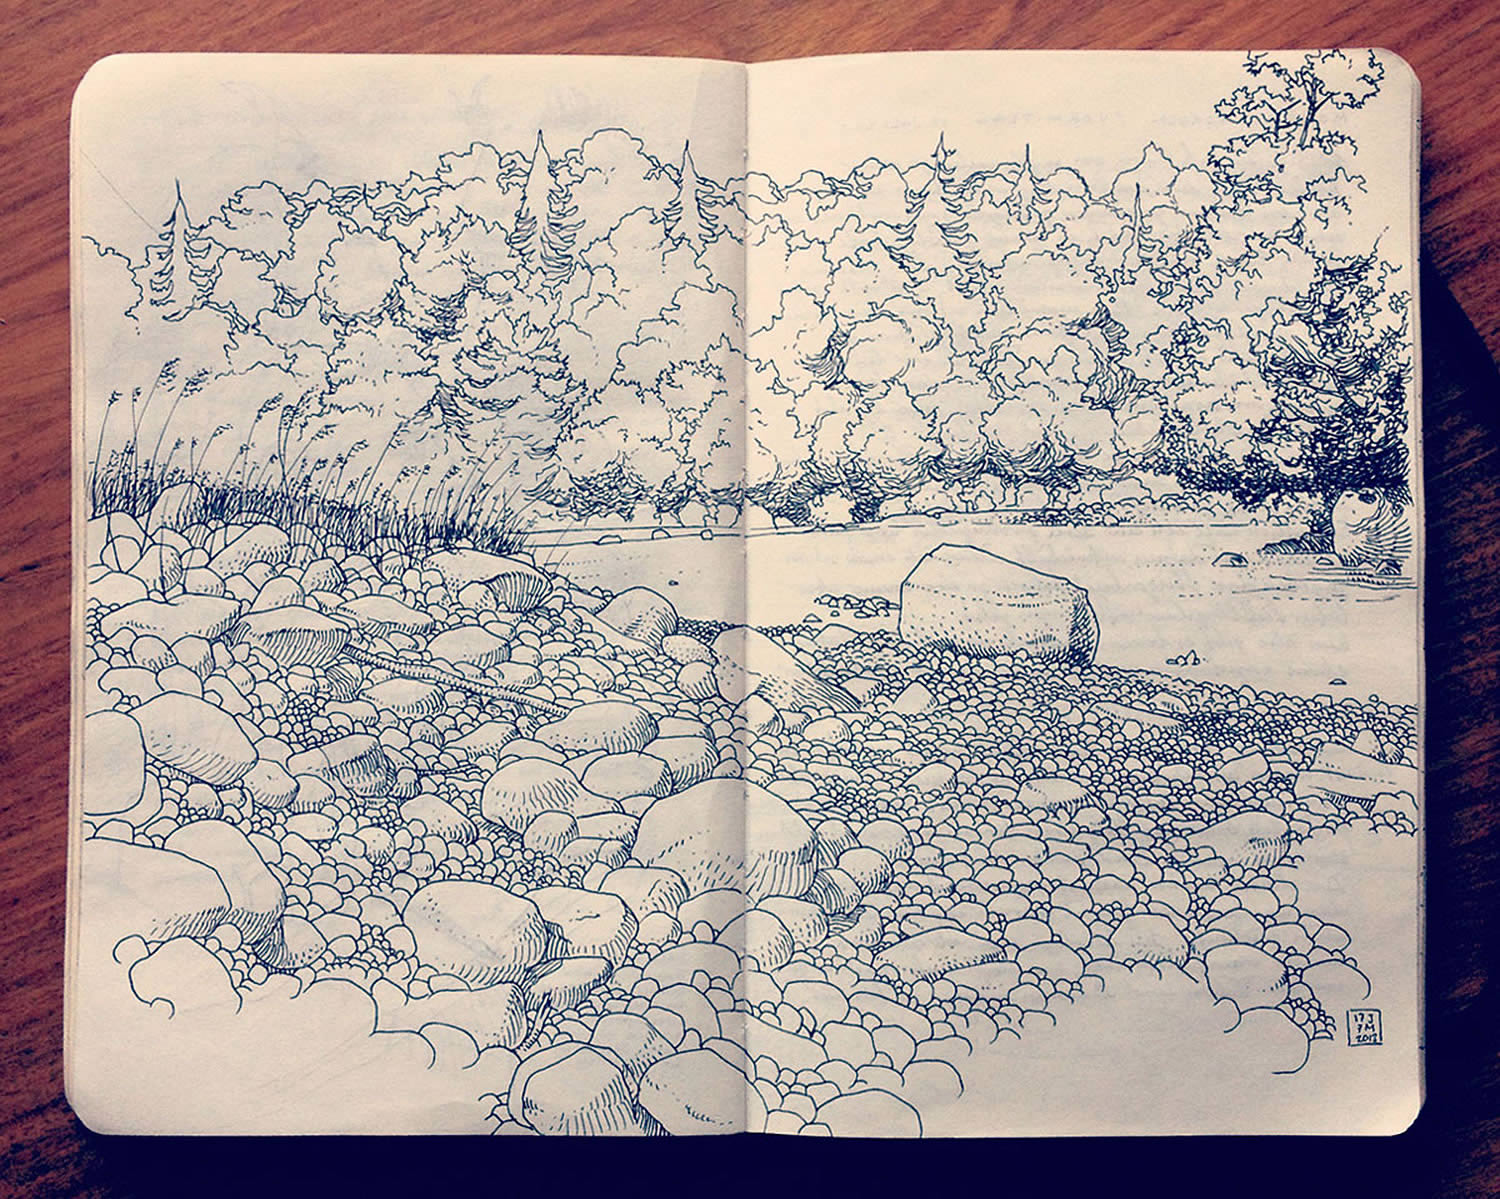 landscape, sketchbook drawing by Jared Muralt